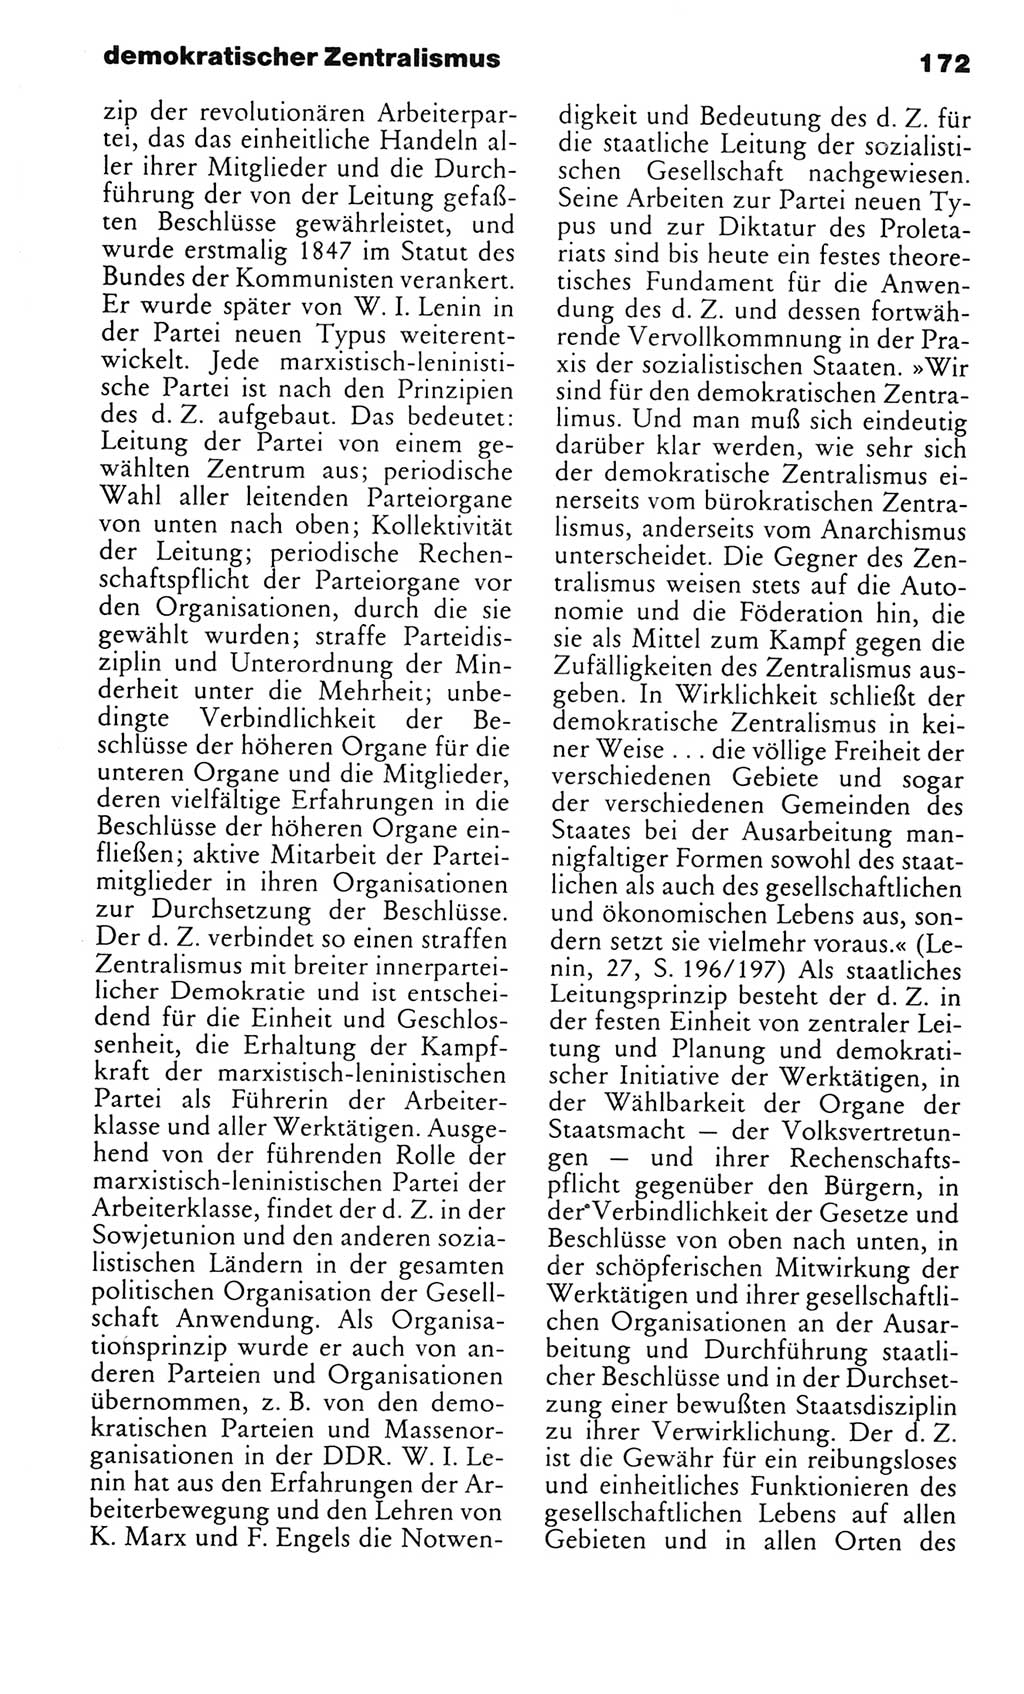 Kleines politisches Wörterbuch [Deutsche Demokratische Republik (DDR)] 1983, Seite 172 (Kl. pol. Wb. DDR 1983, S. 172)